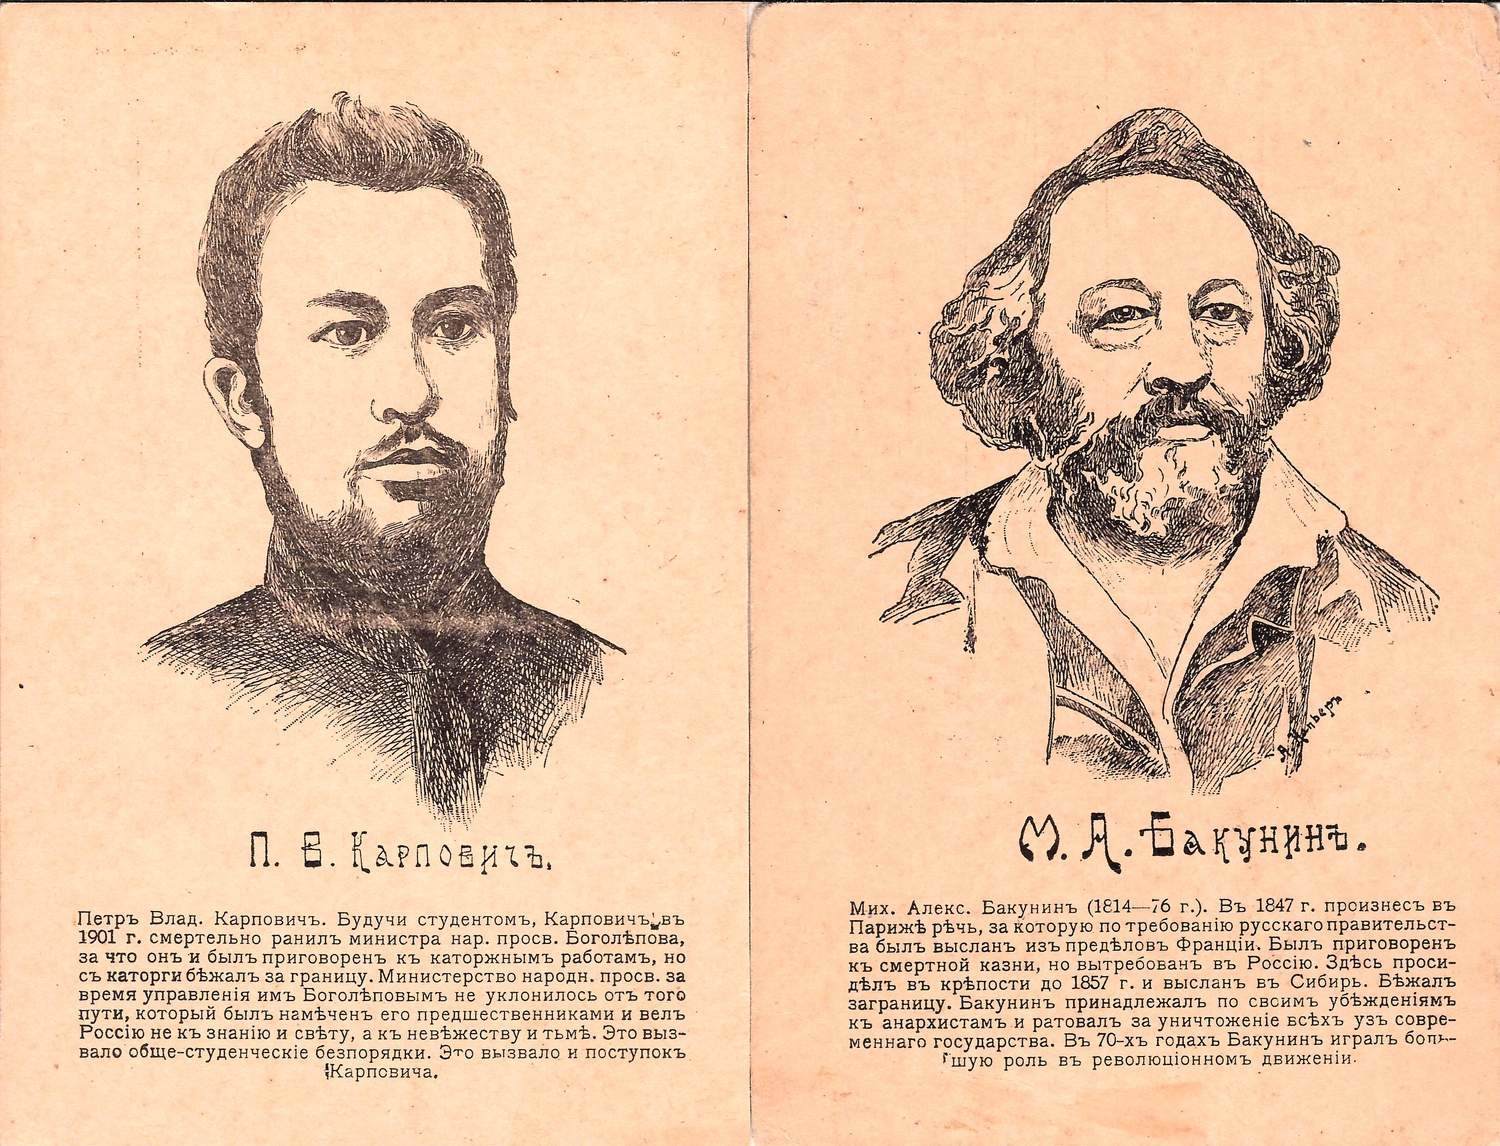 Напьерз А. 2 открытки «Деятели революционного движения». Издание Н.Ю. Резникова, 1910-е годы.